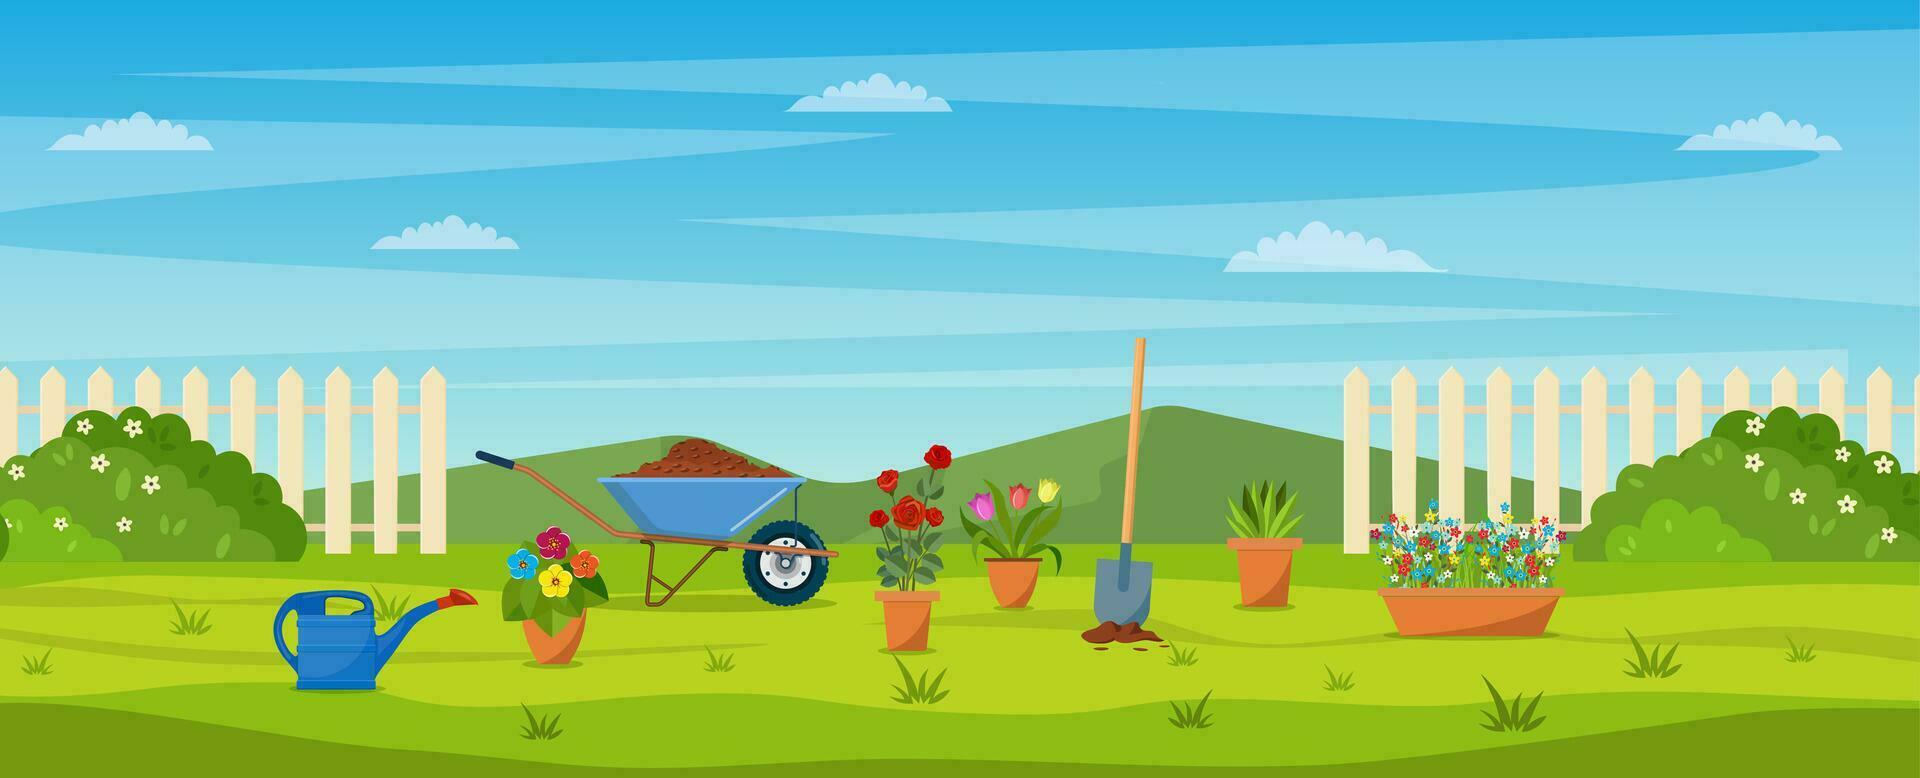 trädgård med grön gräs, blommor, trädgård skottkärra, skyffel. trädgård begrepp. baner med vår eller sommar landskap. vektor illustration i platt design